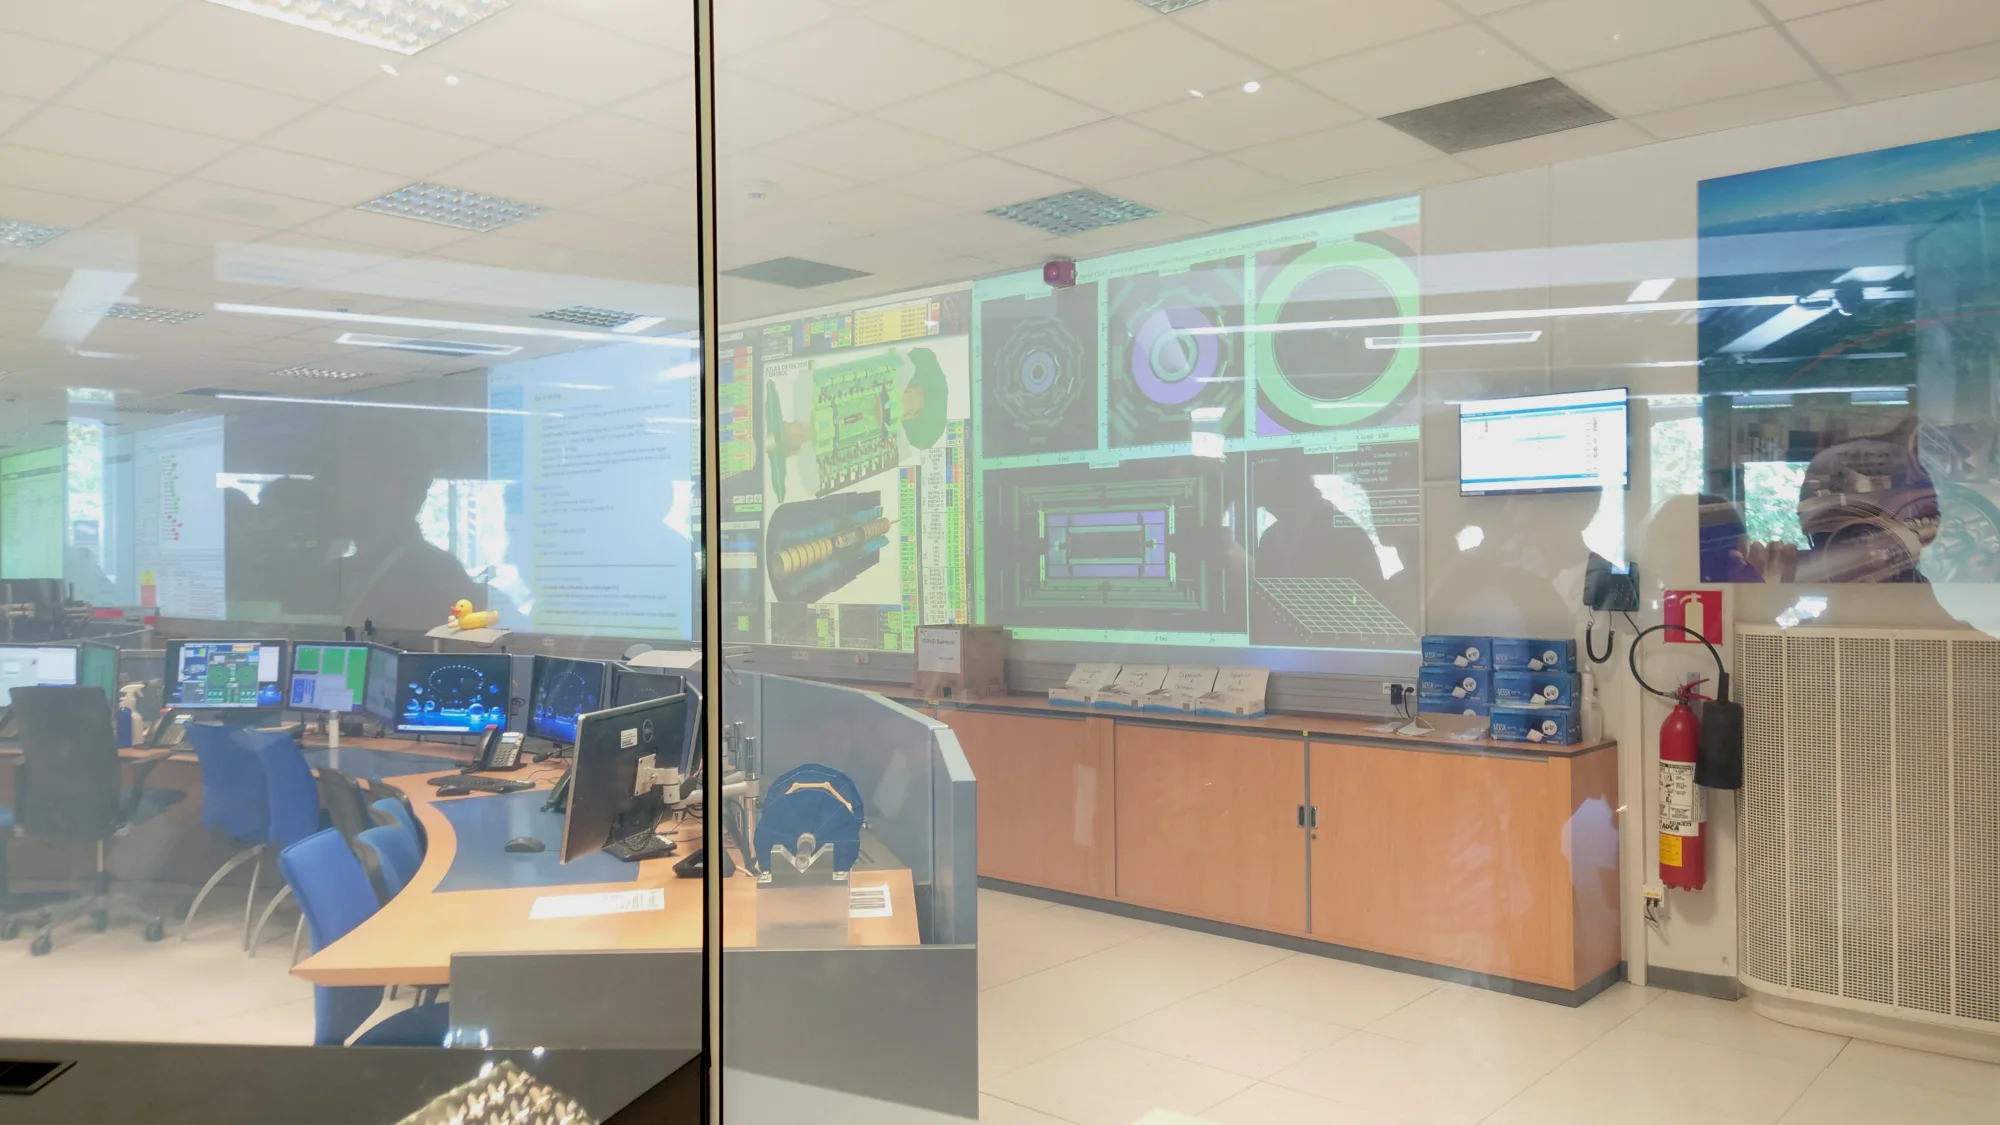 从展览室可以透过玻璃墙看到ATLAS控制室内部。控制室中的大屏幕是用于监控探测器的运行情况，不过由于最近LHC没有在运行，所以没什么人来值班。只有一名安全员按照规定是一定要在里面值班的。